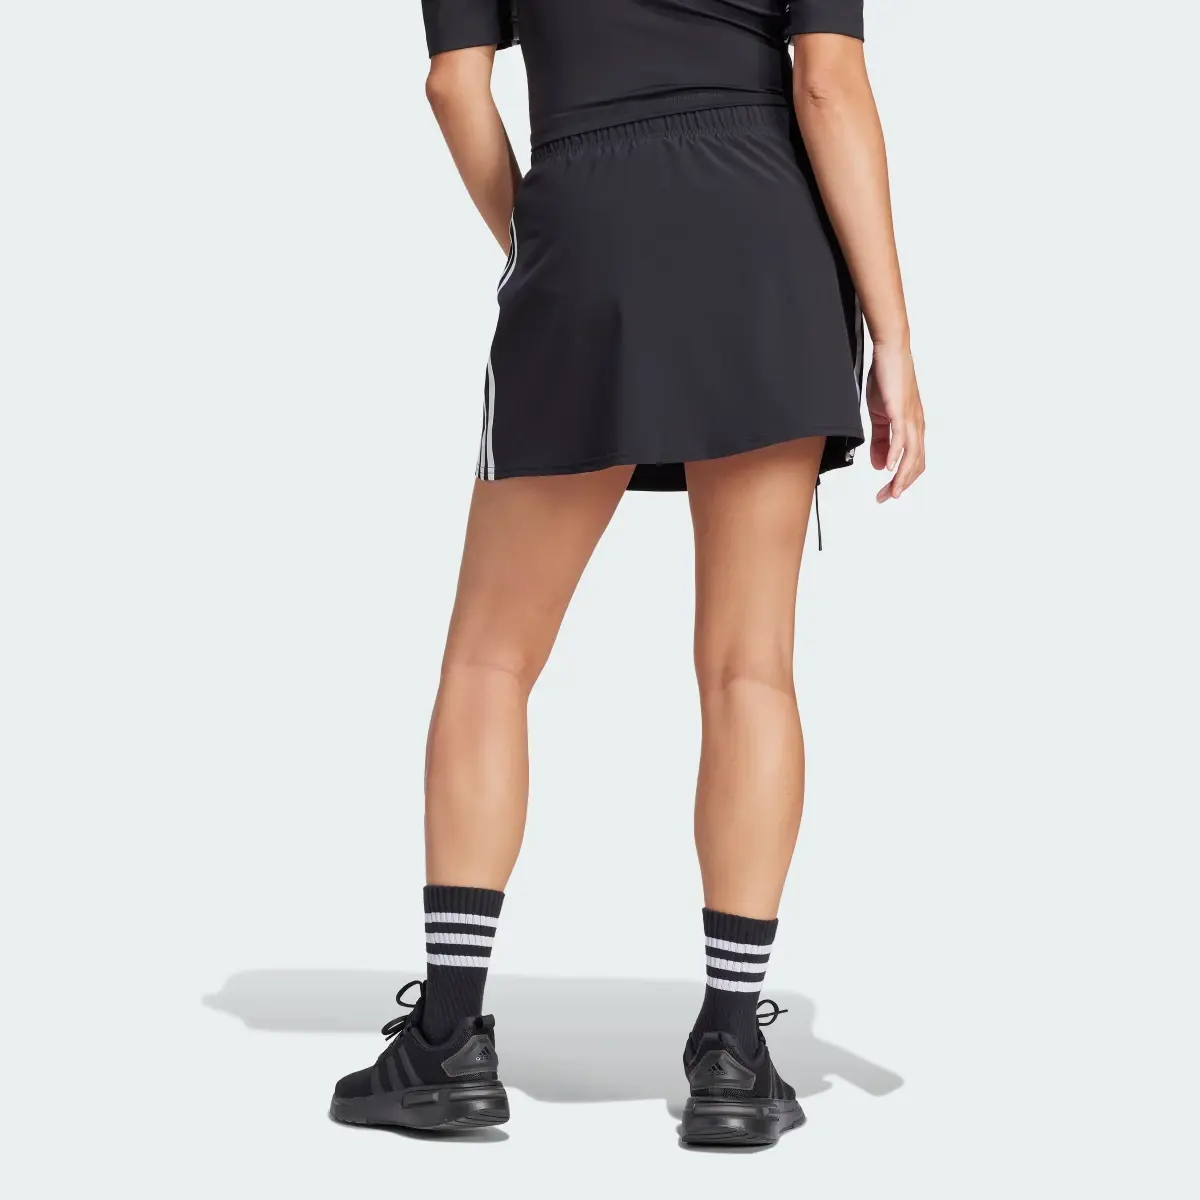 Adidas Express All-Gender Skirt. 2